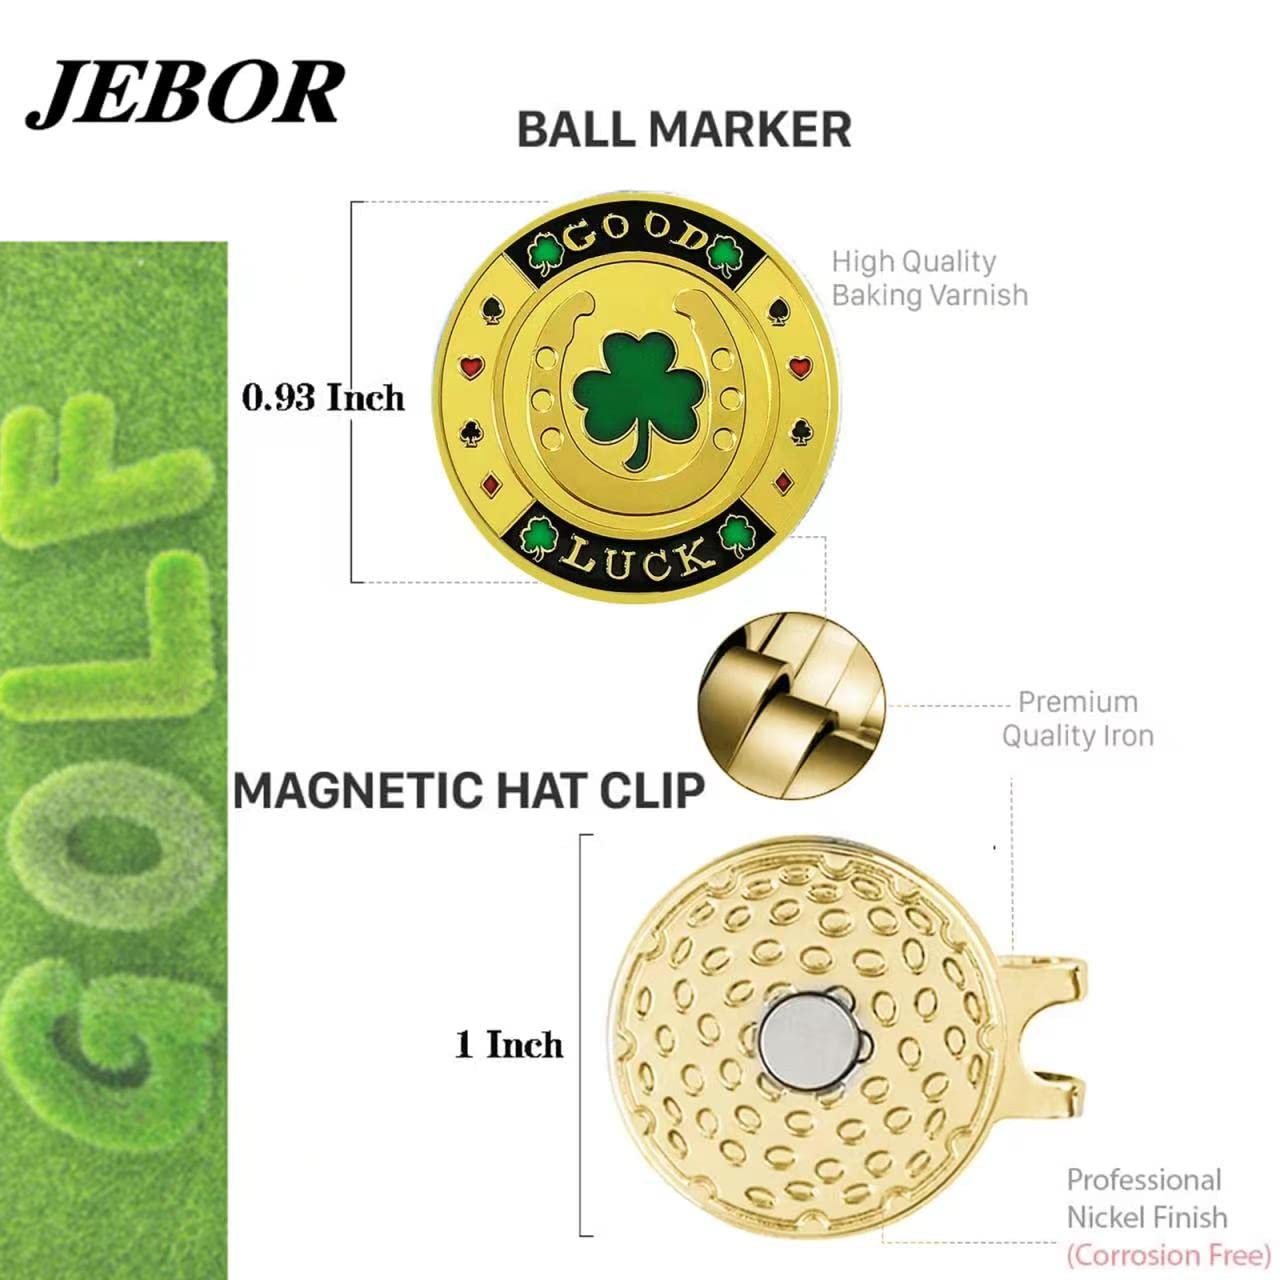 JEBOR ゴルフ マーカー ×4個 マグネット付きハットクリップ 収納ボックスと2個セット